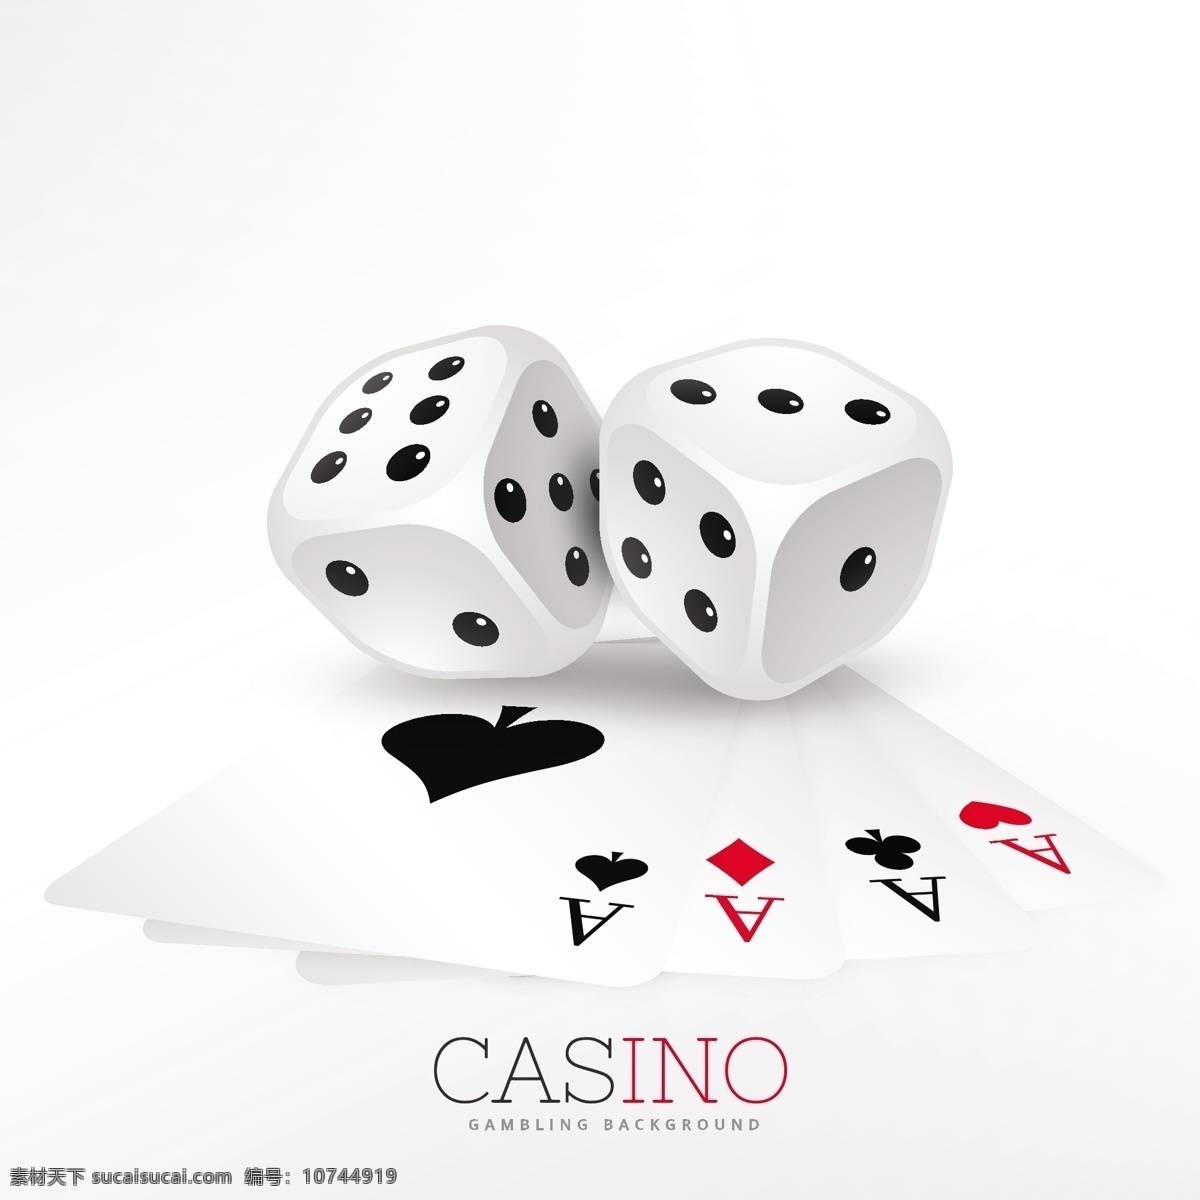 两 张 骰子 赌场 卡 背景 卡片 金钱 运动 红色 颜色 黑色 游戏 检查 成功 娱乐 扑克 红心 胜利 钻石 芯片